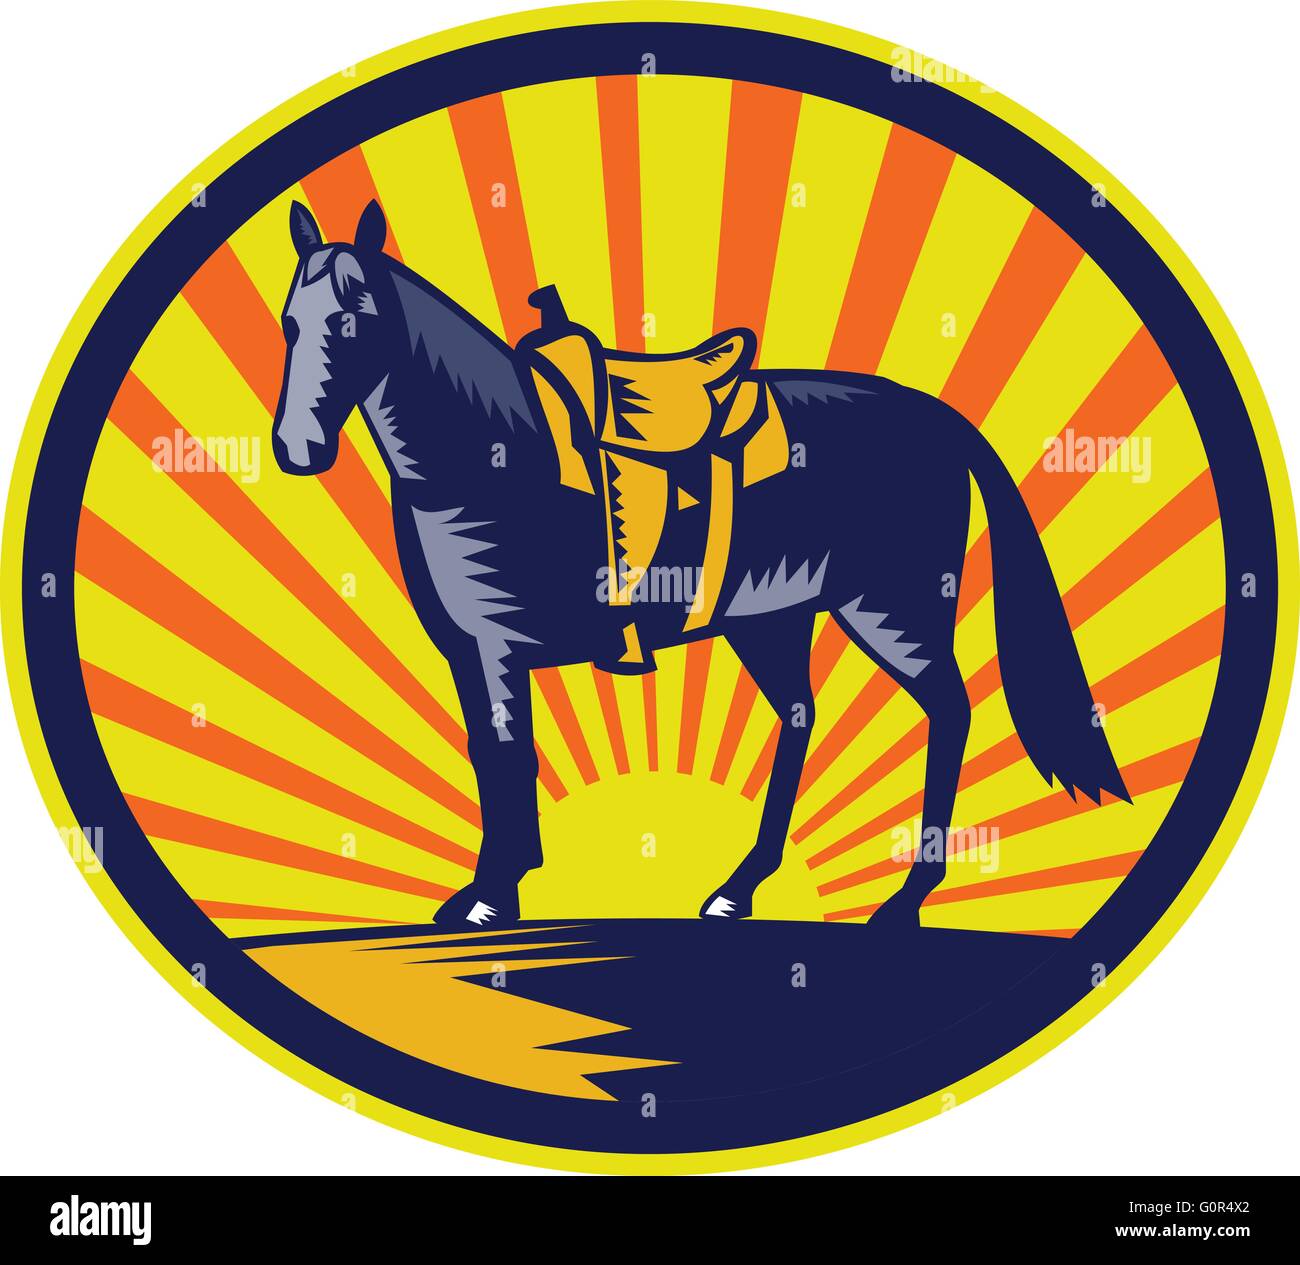 Illustrazione di un riderless horse con il vecchio stile western sella sulla recinzione ranch imposta all'interno di forma ovale con sunburst in fatto di sfondo rétro xilografia stile. Illustrazione Vettoriale